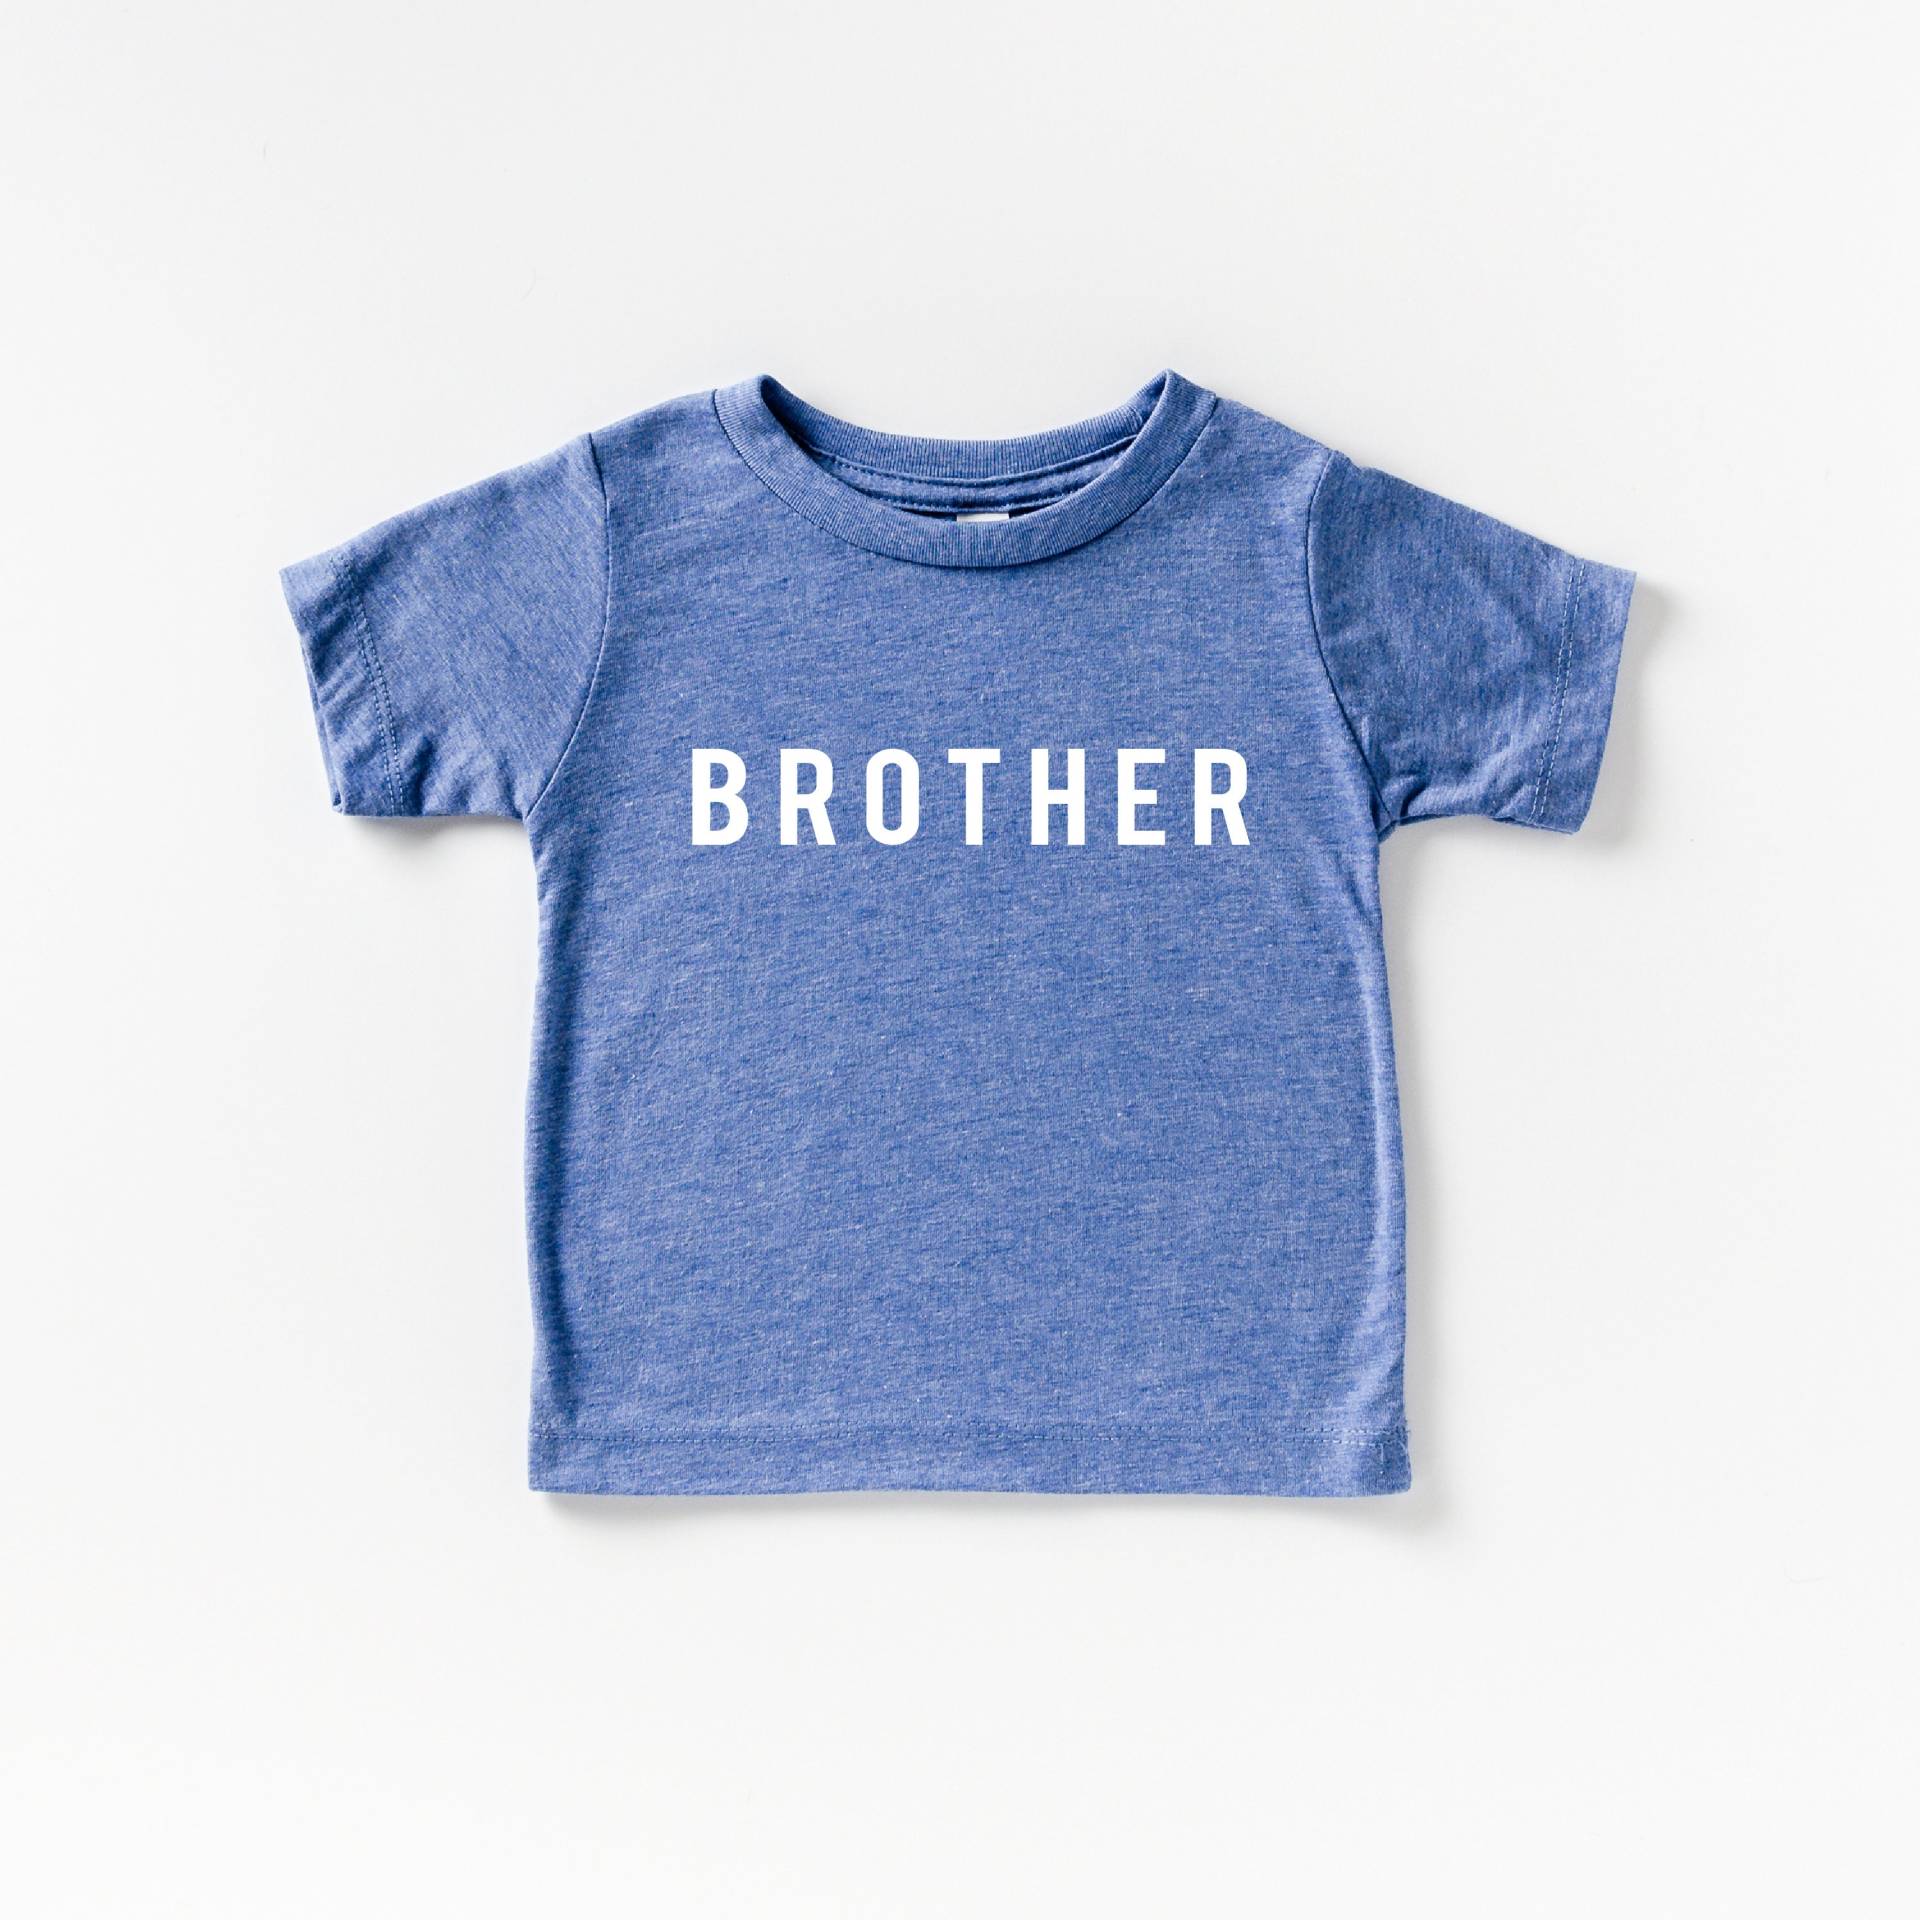 Bruder Tshirt, Kleinkind Shirt, Baby Großer Bruder, Erwartend, Jungen Neues Baby, Reveal, Gender Reveal von ShopBeauandBelle